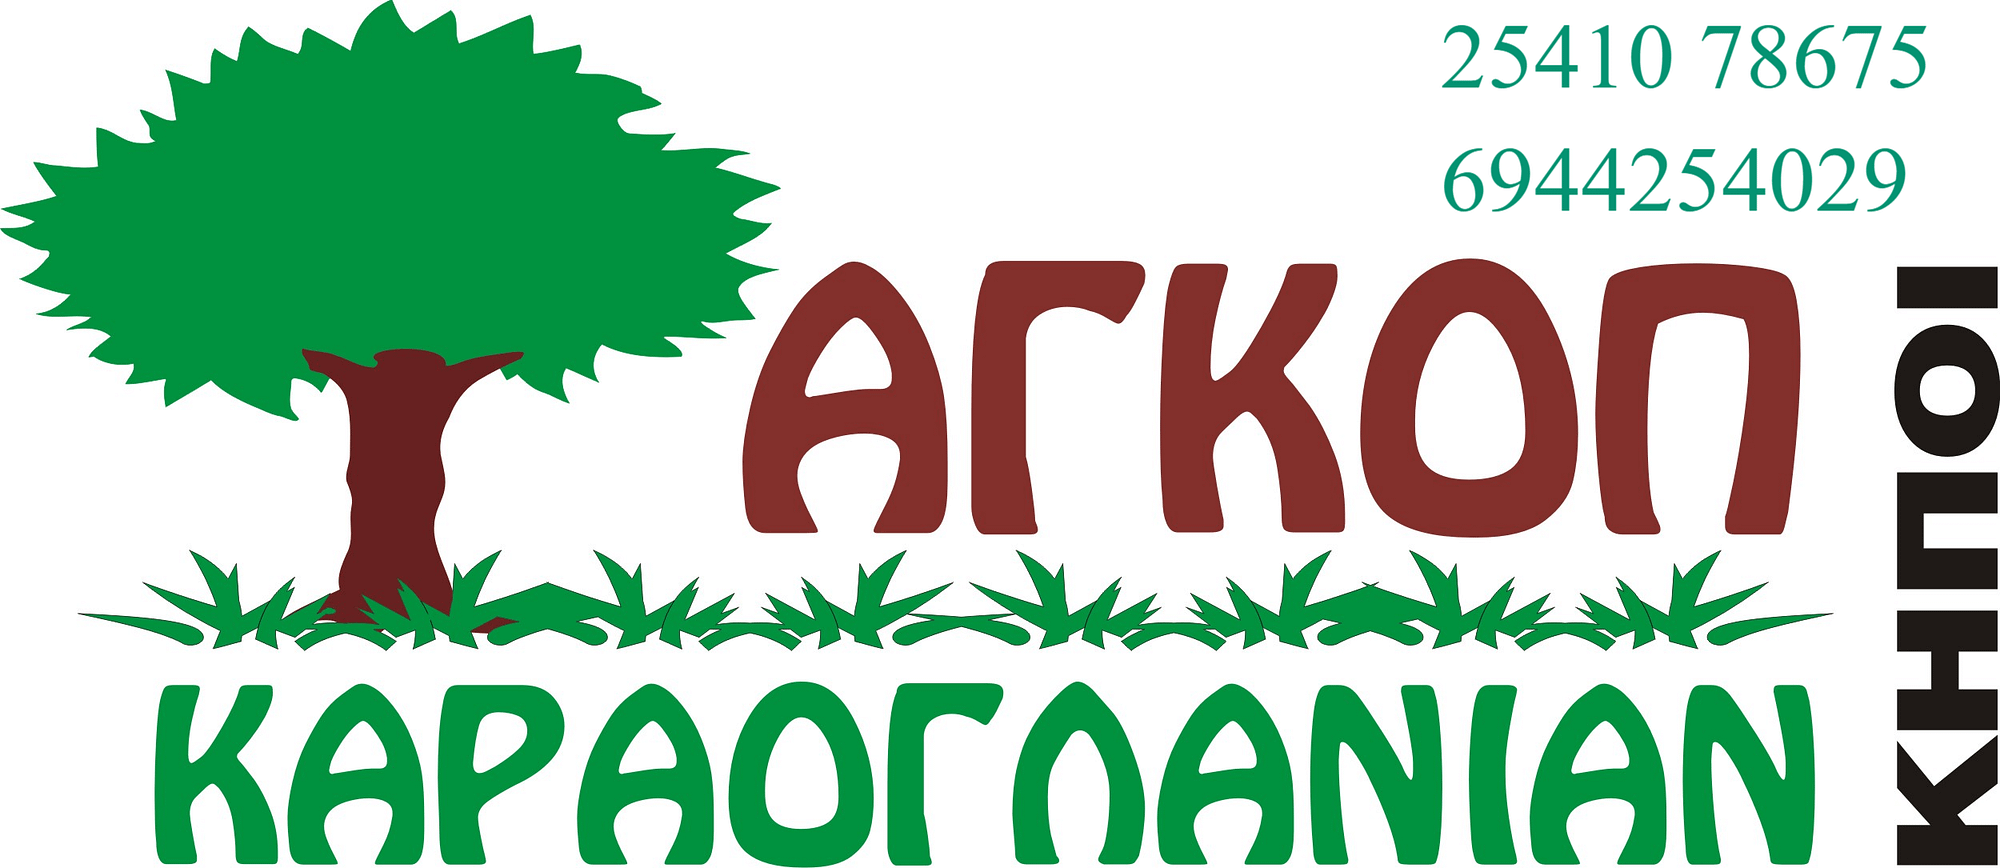 agkop_karaoglanian